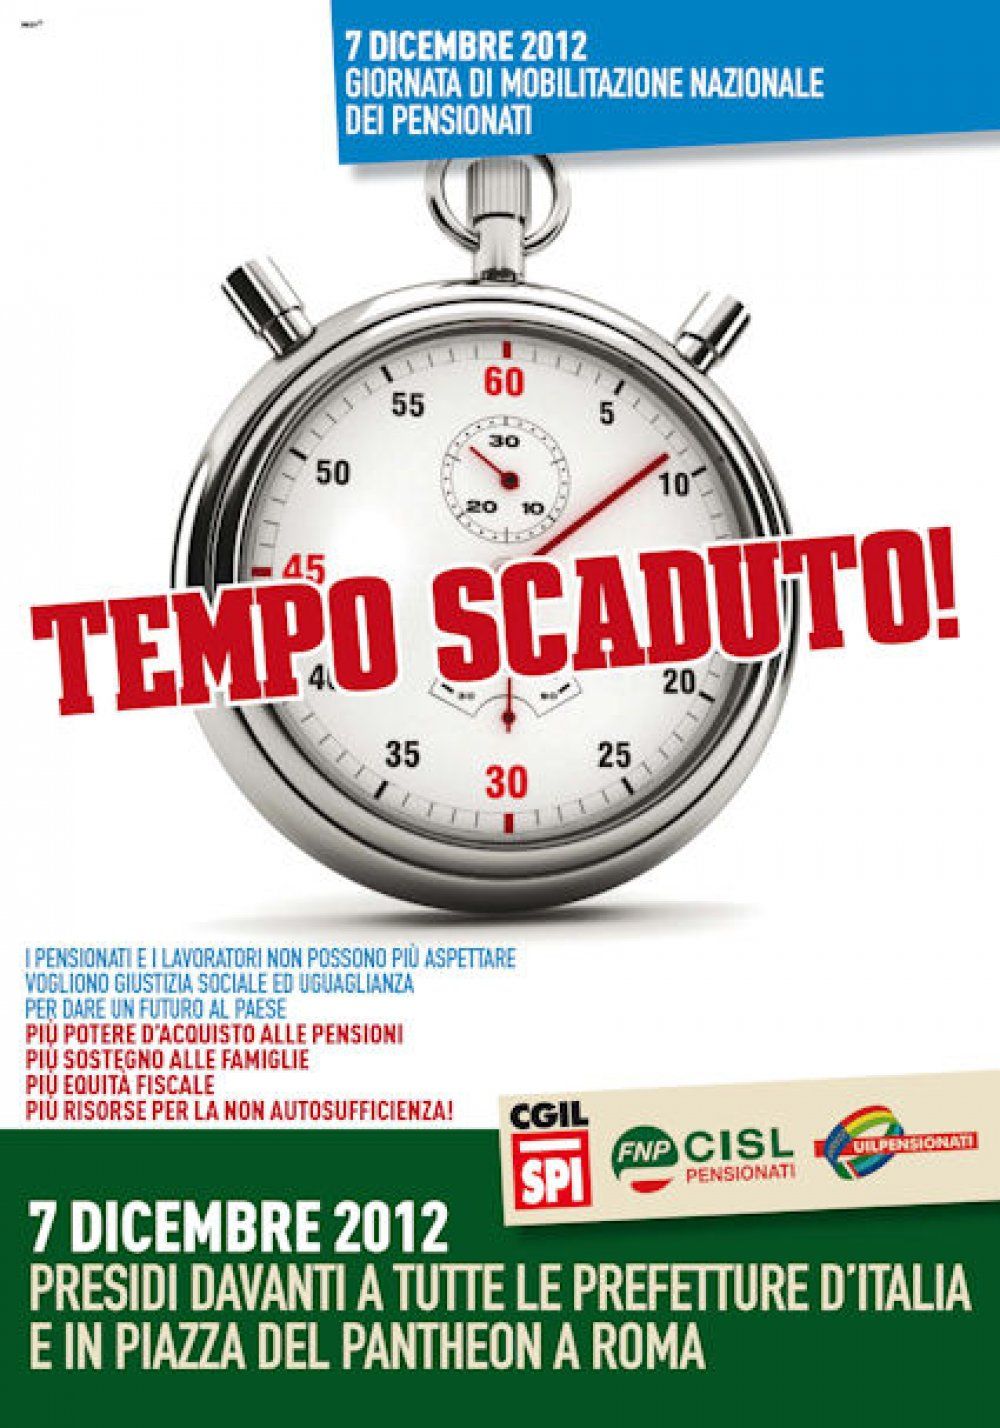 7 dicembre 2012 Spi Fnp e Uilp Giornata di mobilitazione nazionale, presidi in tutta Italia